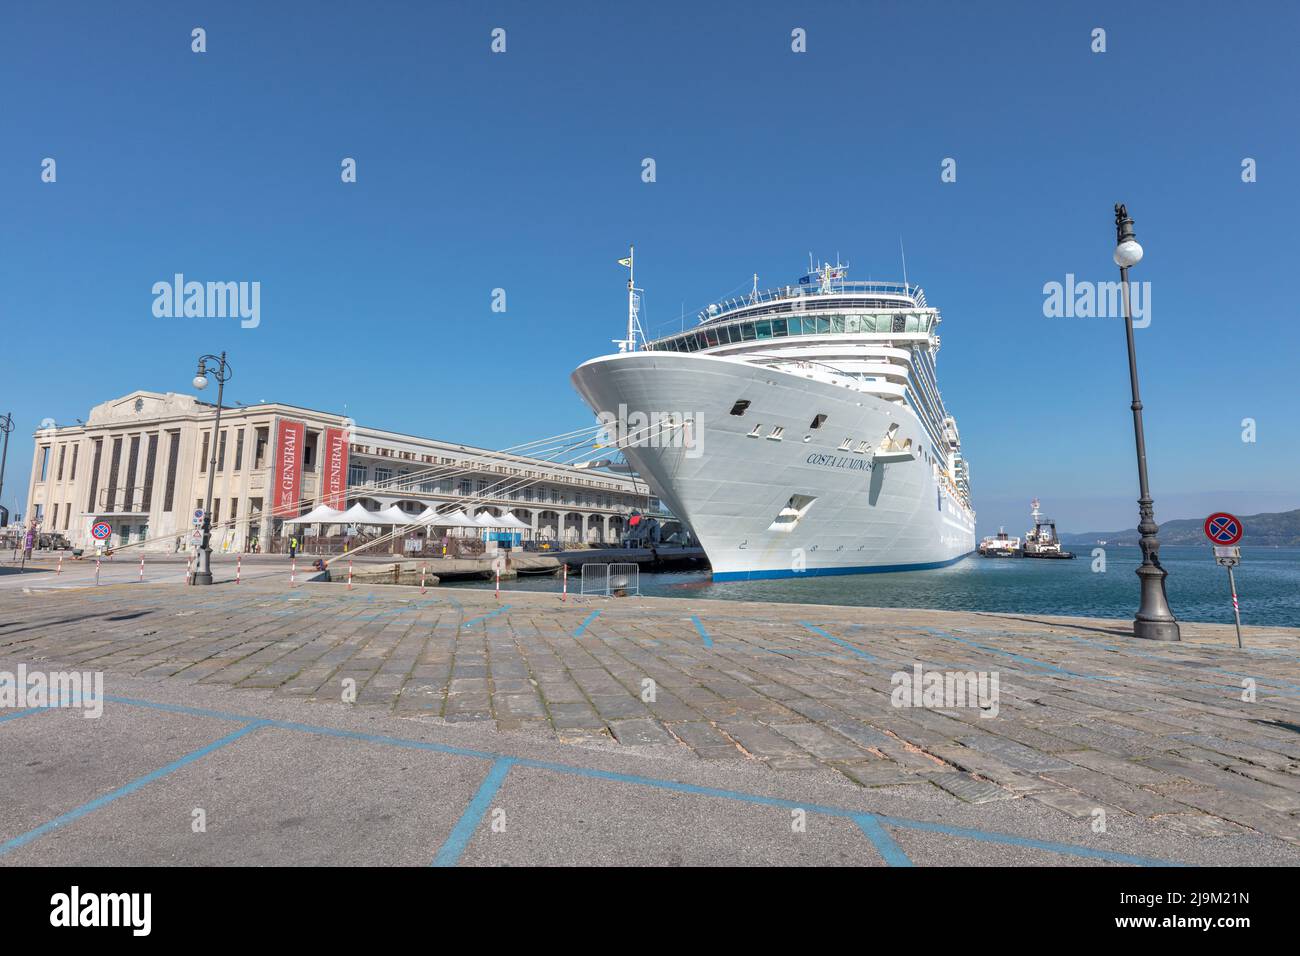 Bateau de croisière Costa Luminosa amarré au terminal de croisière dans le port de Trieste vu de la promenade Riva del Mandracchio sur le front de mer Banque D'Images